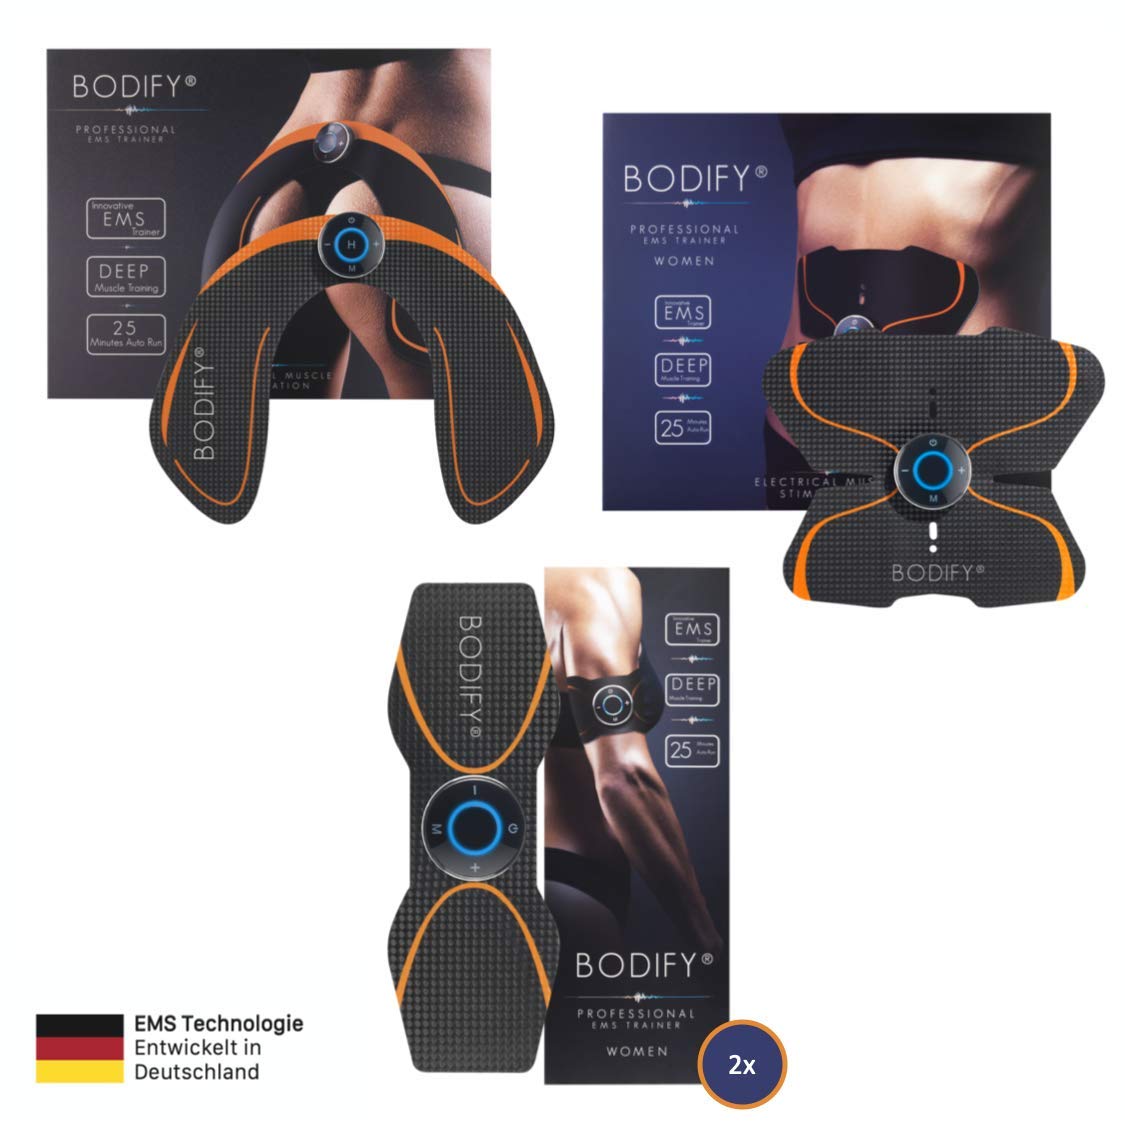 Bodify® 4in1 EMS Set - Für Bauch, Arme, Beine & Po - Zur gezielten Stimulation der Muskulatur - Ganzkörper Muskelaufbau - EMS Trainingsgerät - Unisex